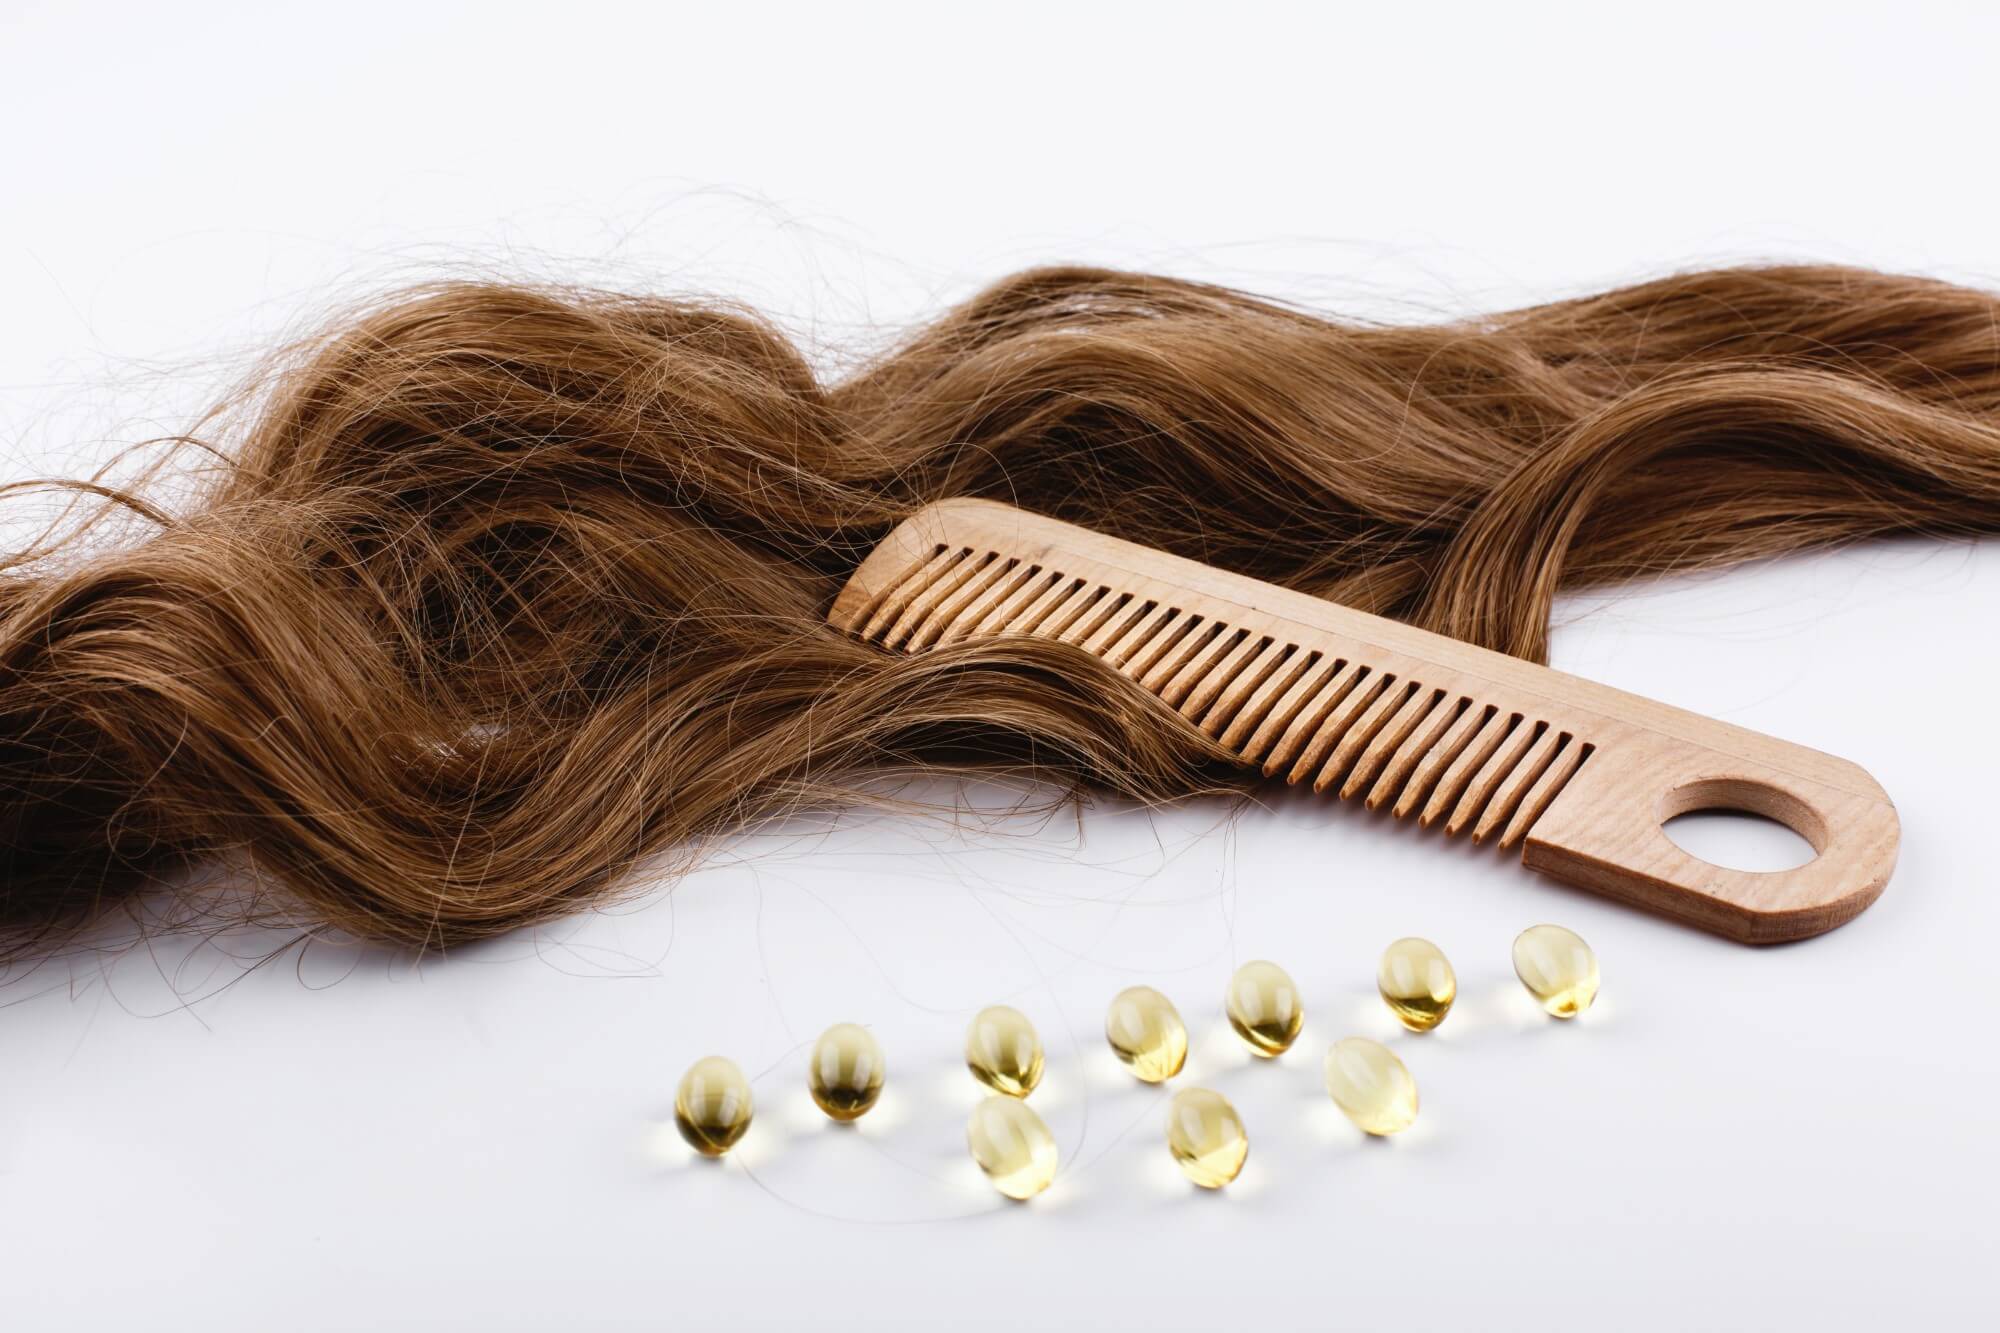 בואו נרד לשורש הבעיה- מהם החלבונים ששומרים על בריאות השיער?